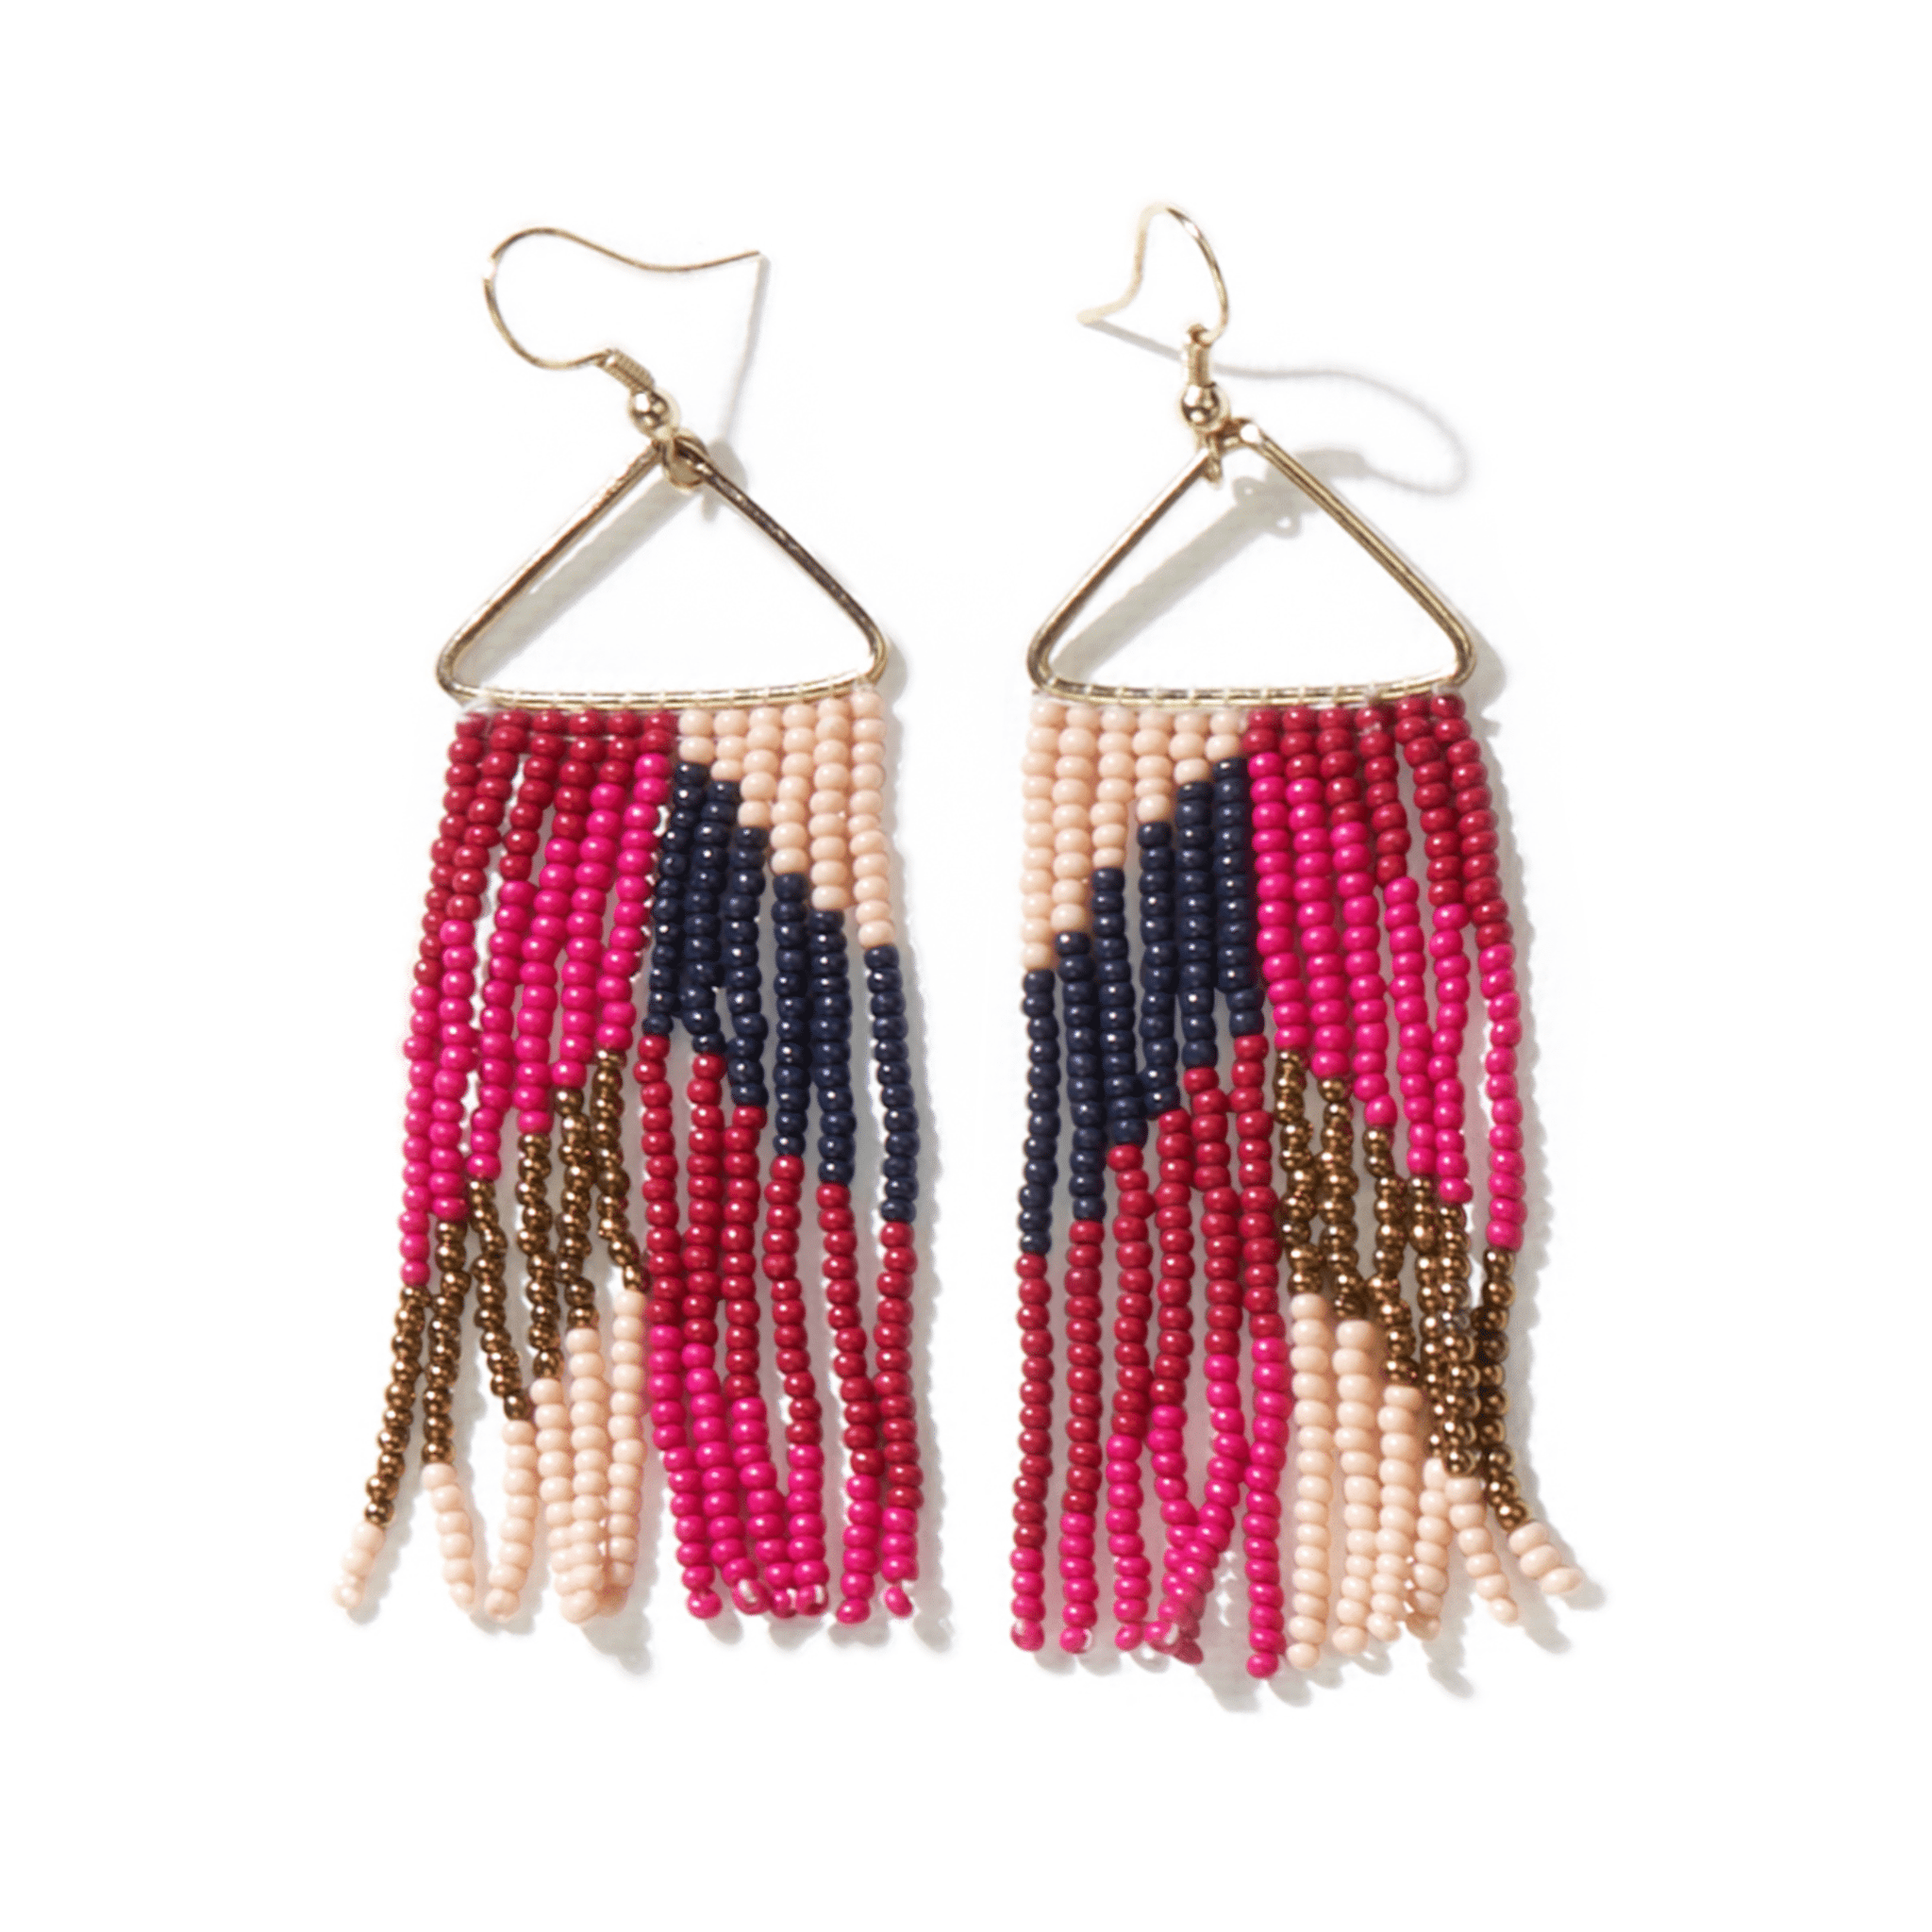 Whitney Chevron Beaded Fringe Earrings - Hot Pink